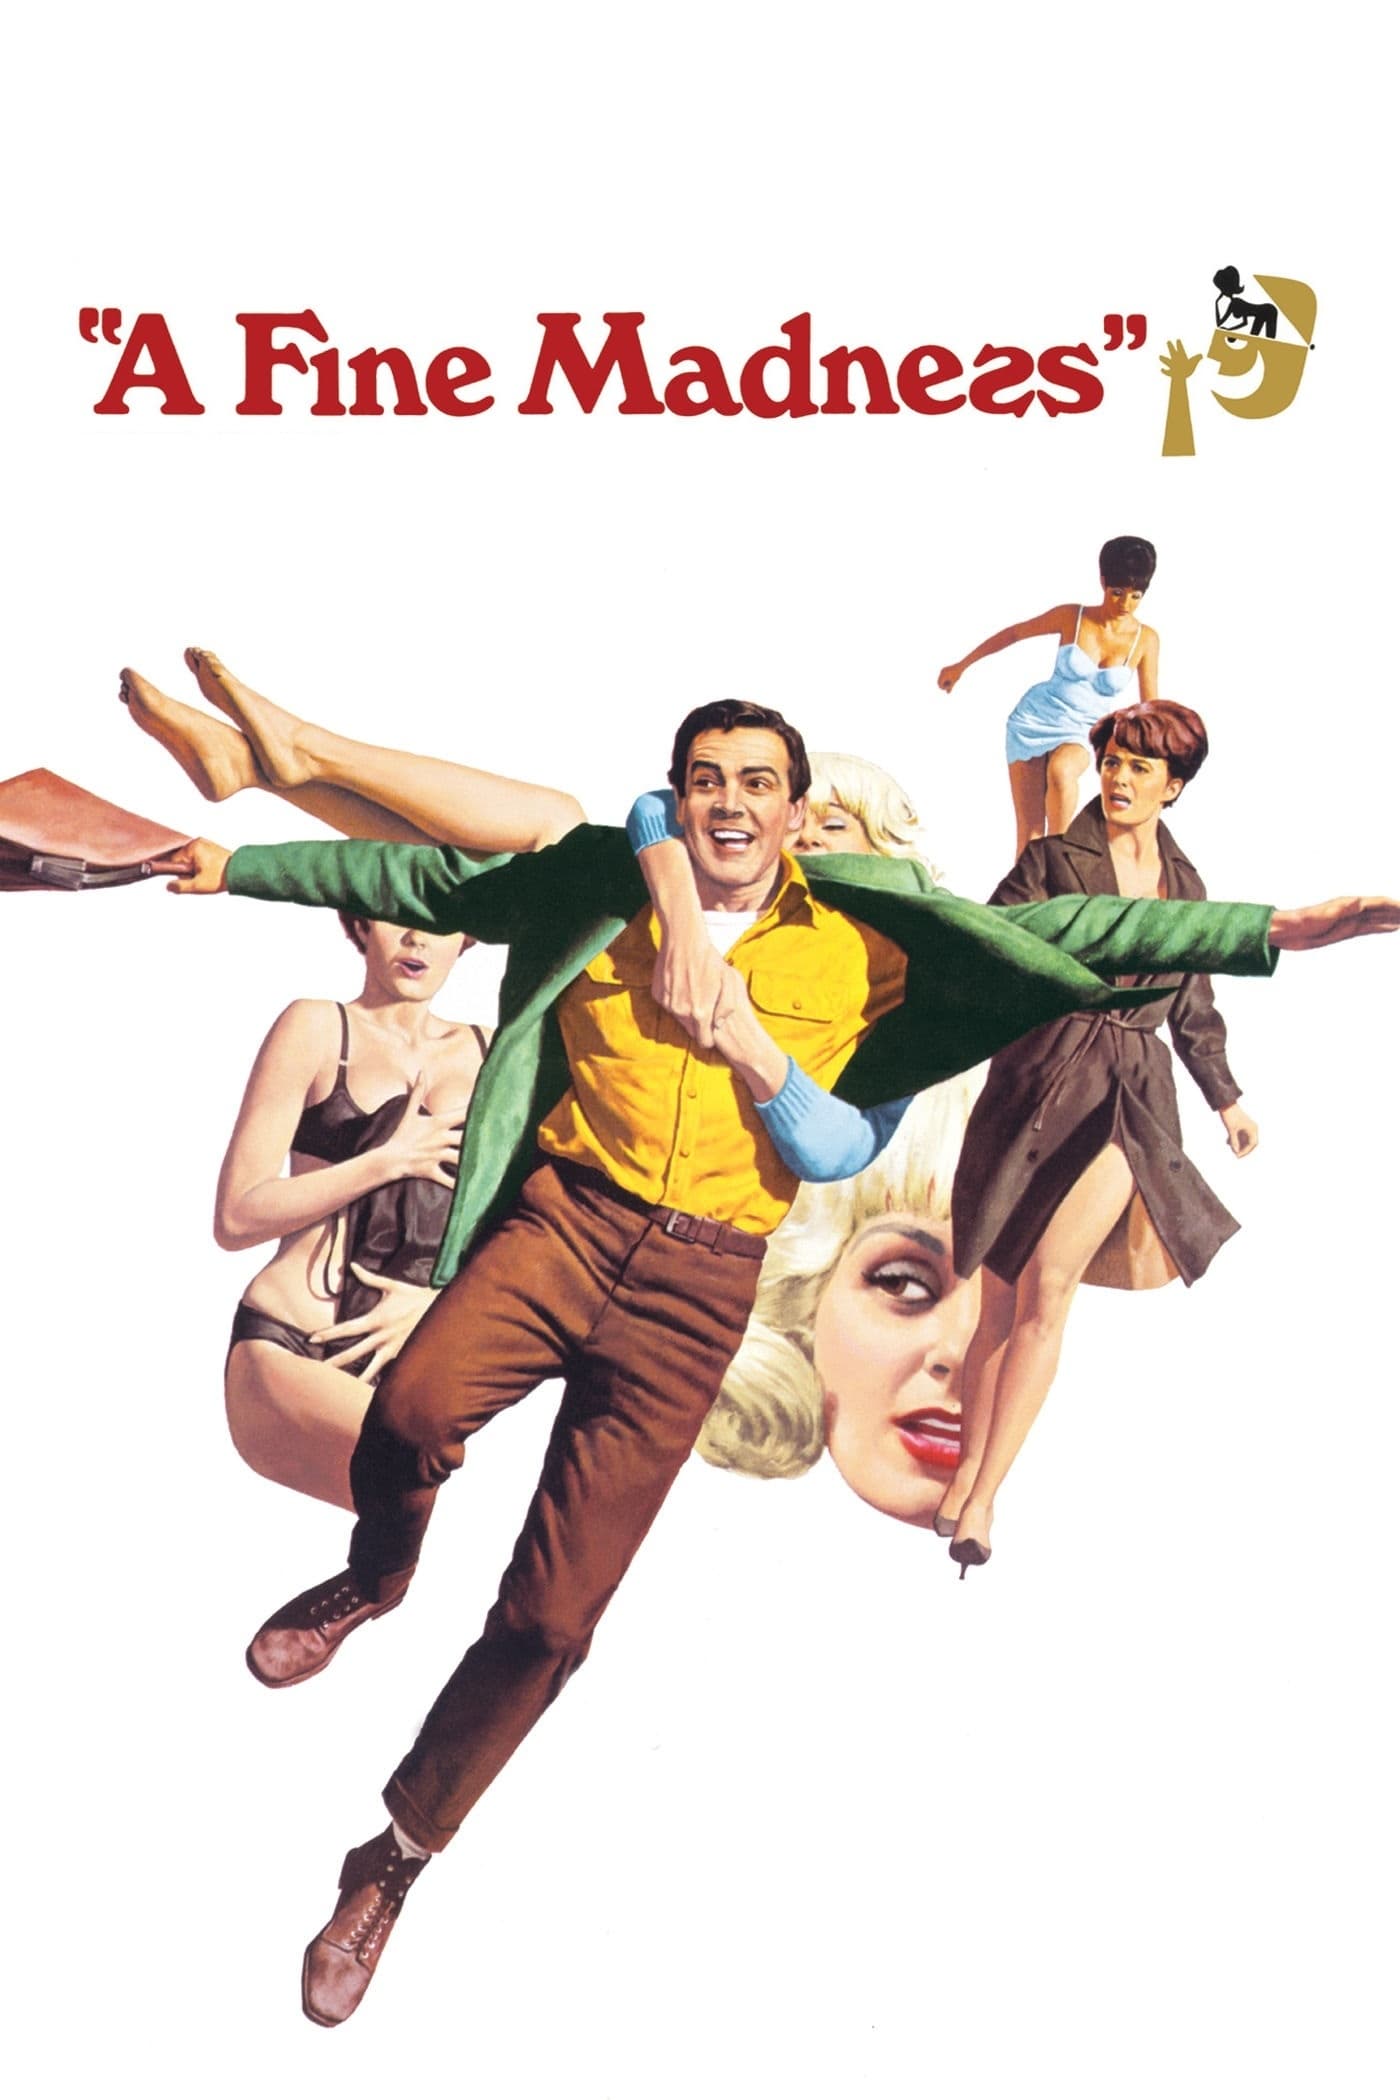 A Fine Madness (1966)